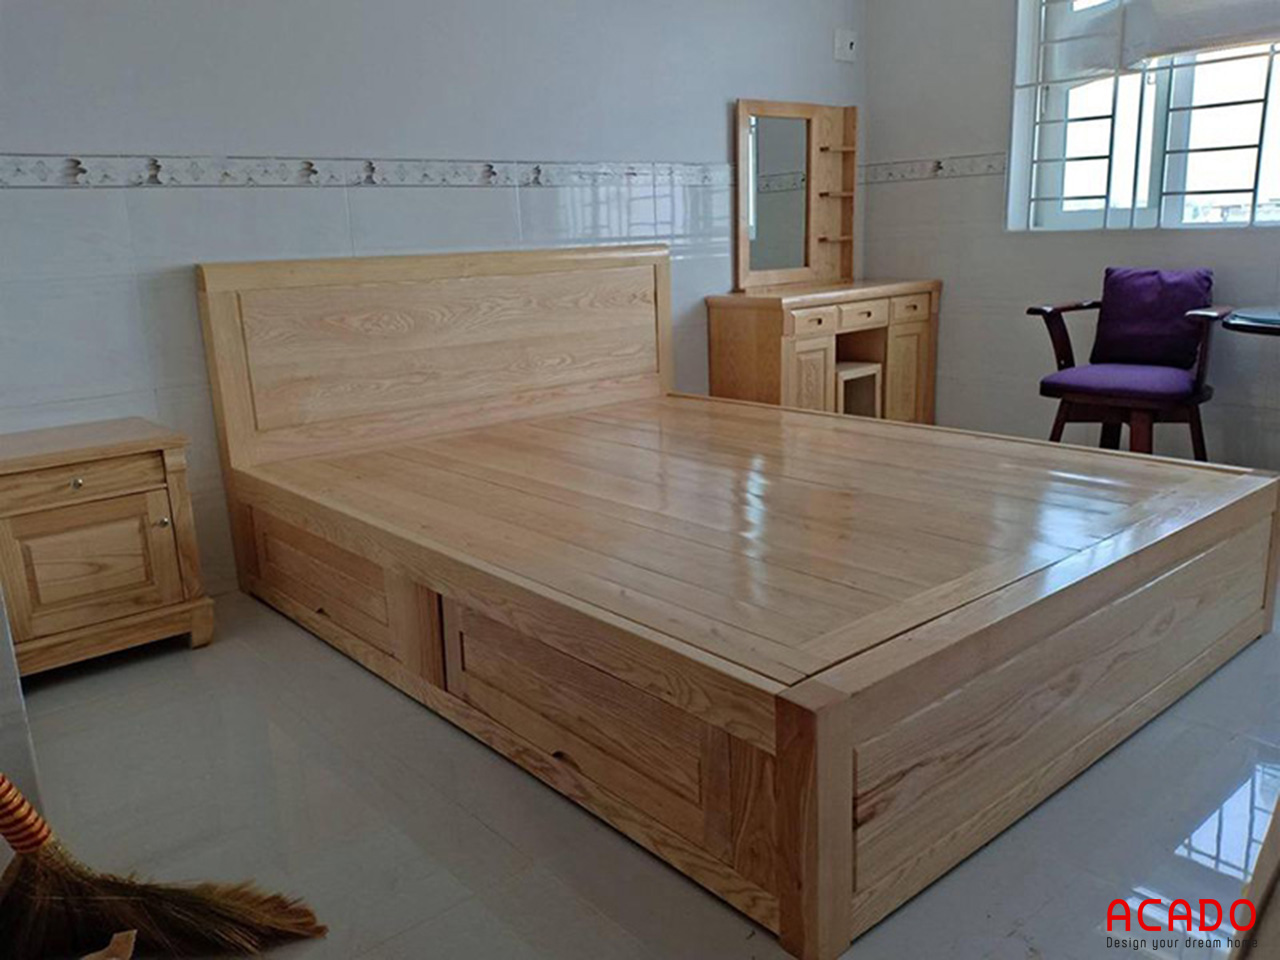 Giường ngủ gỗ sồi Nga chắc chắn, bền đẹp - báo giá giường ngủ tại Acado